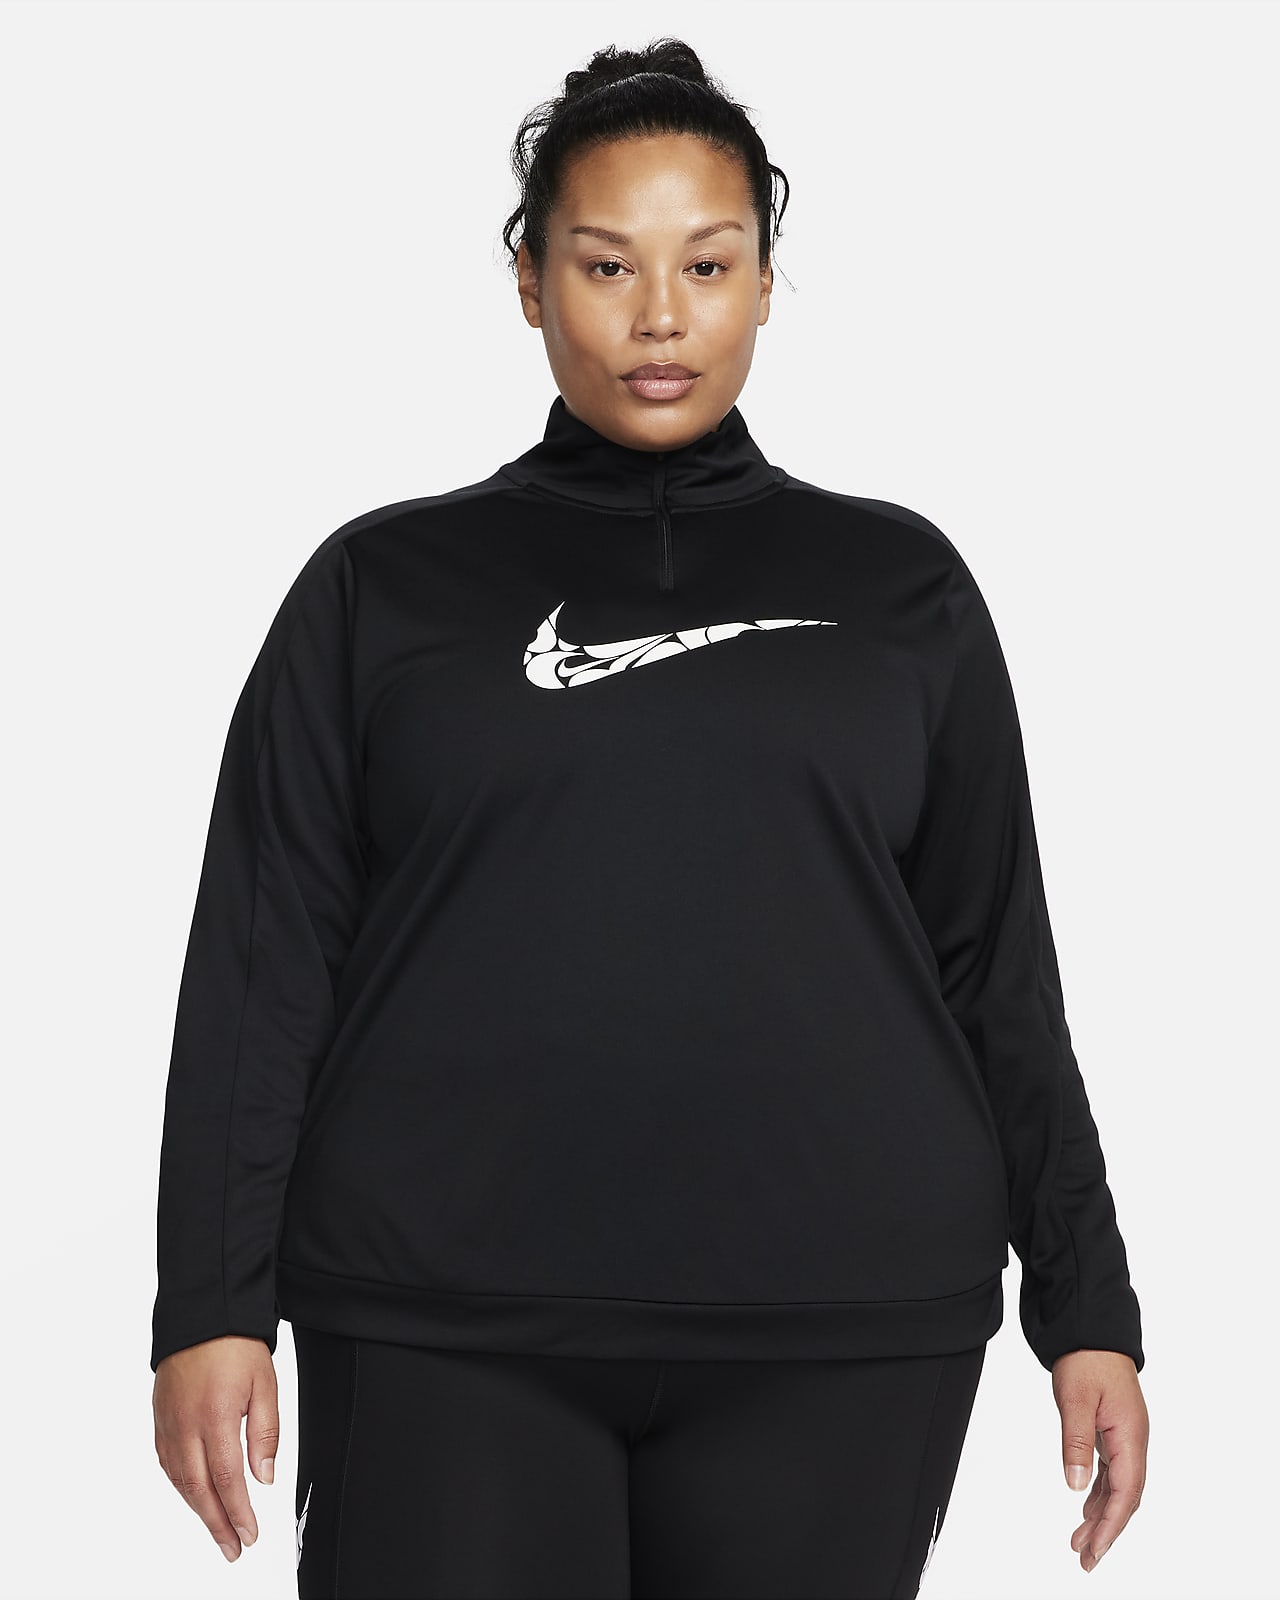 Mellanlager Nike Swoosh Dri-FIT med dragkedja i kvartslängd för kvinnor (Plus Size)